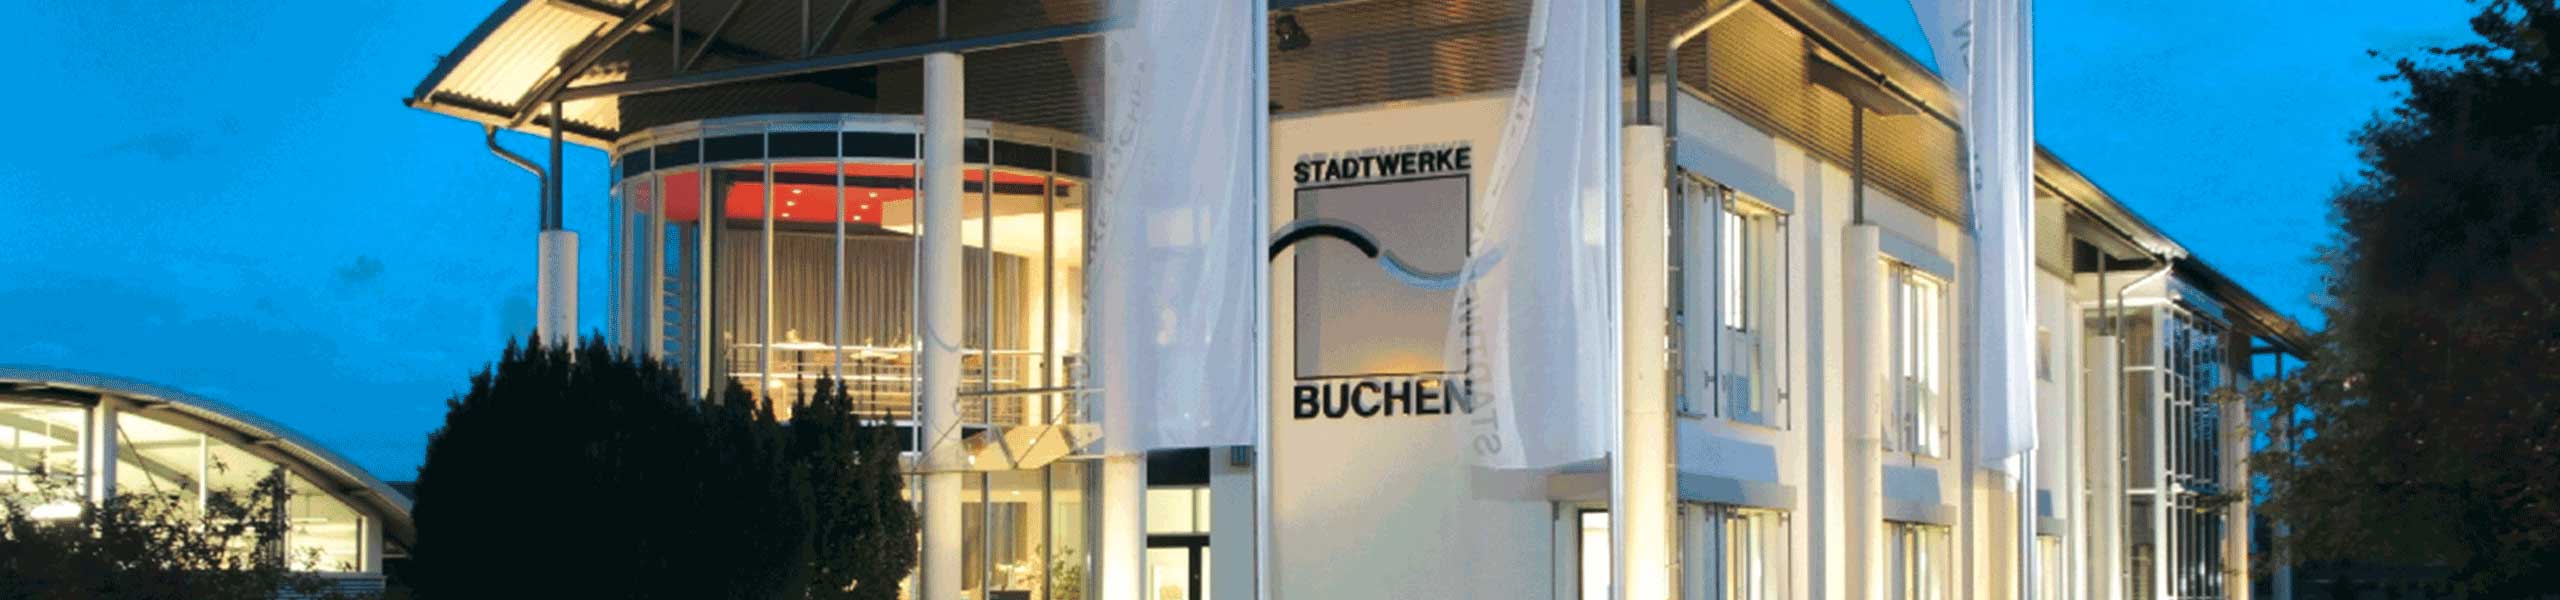 Stadtwerke Buchen GmbH & Co KG - Über die Stadtwerke Buchen